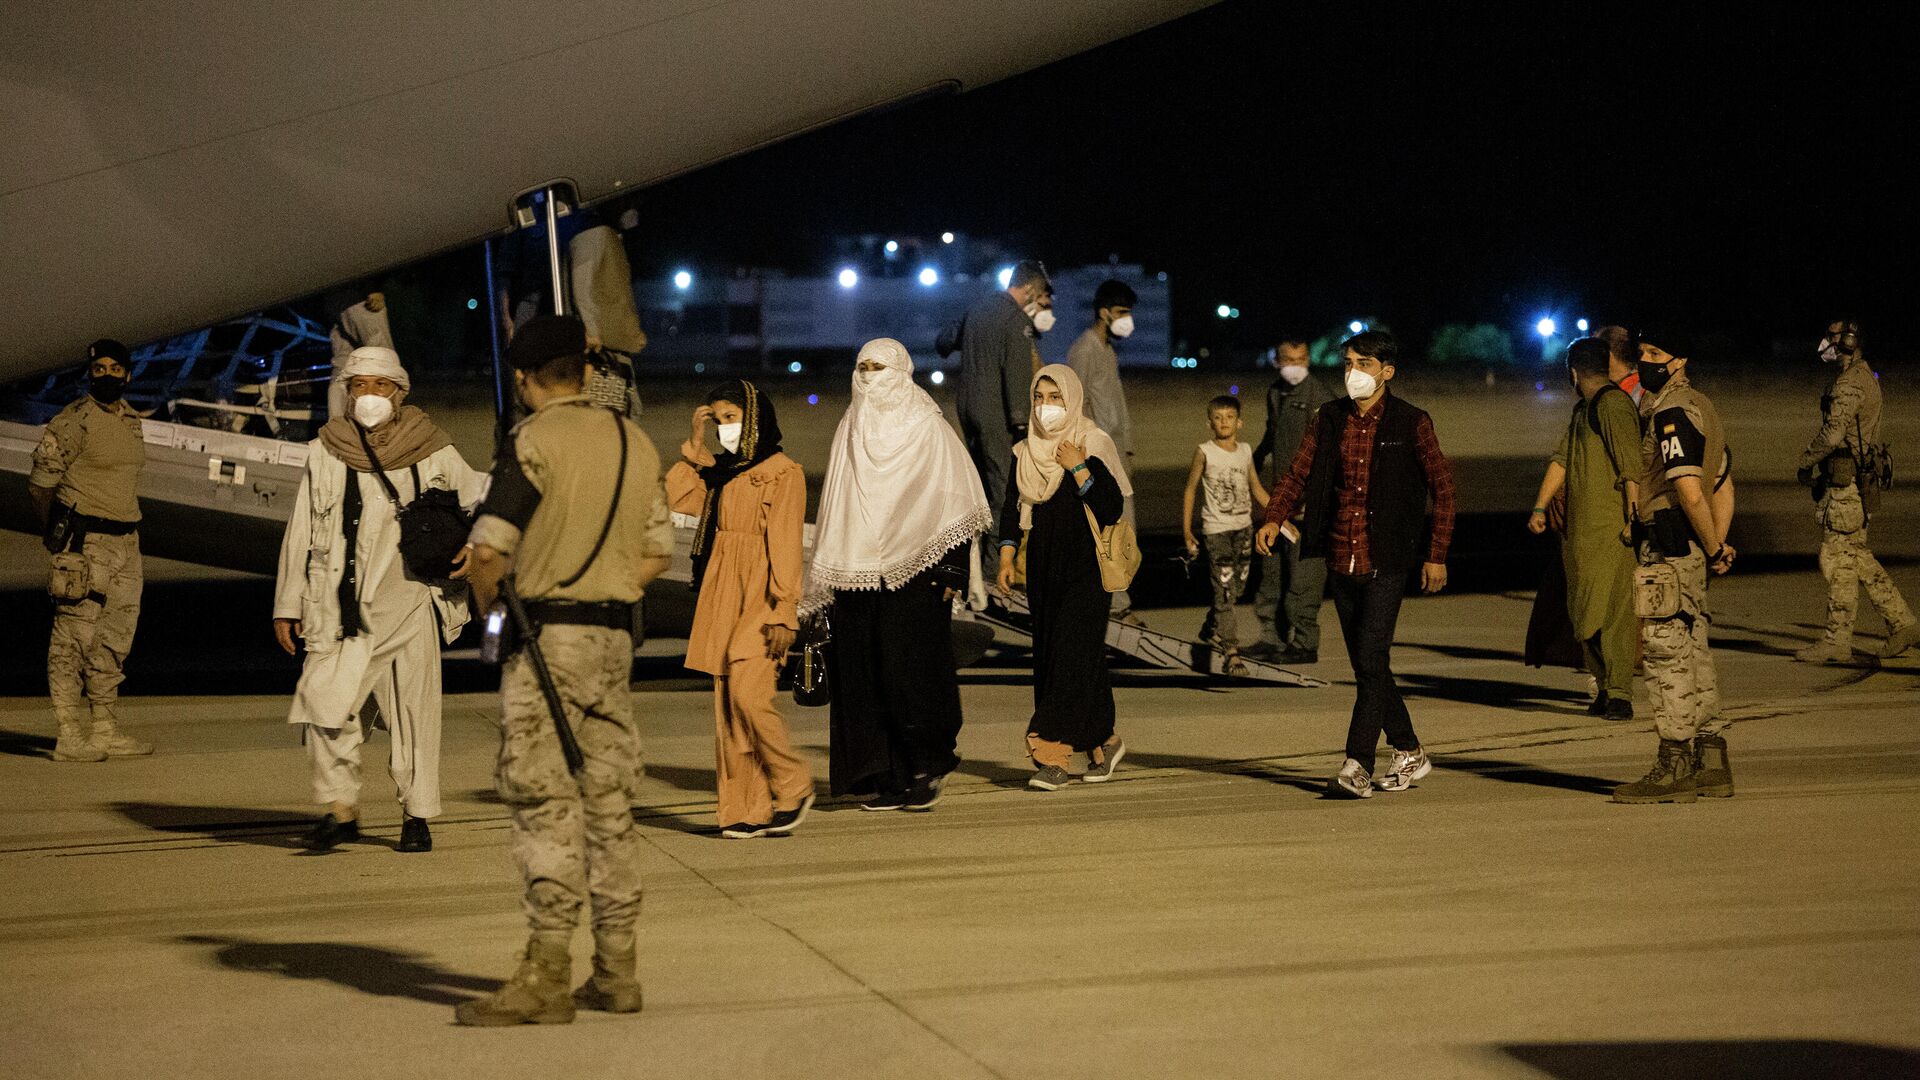 Varias personas repatriadas llegan a la pista tras bajarse del avión A400M en el que ha sido evacuados de Kabul, a 19 de agosto de 2021, en Torrejón de Ardoz, Madrid - Sputnik Mundo, 1920, 19.08.2021